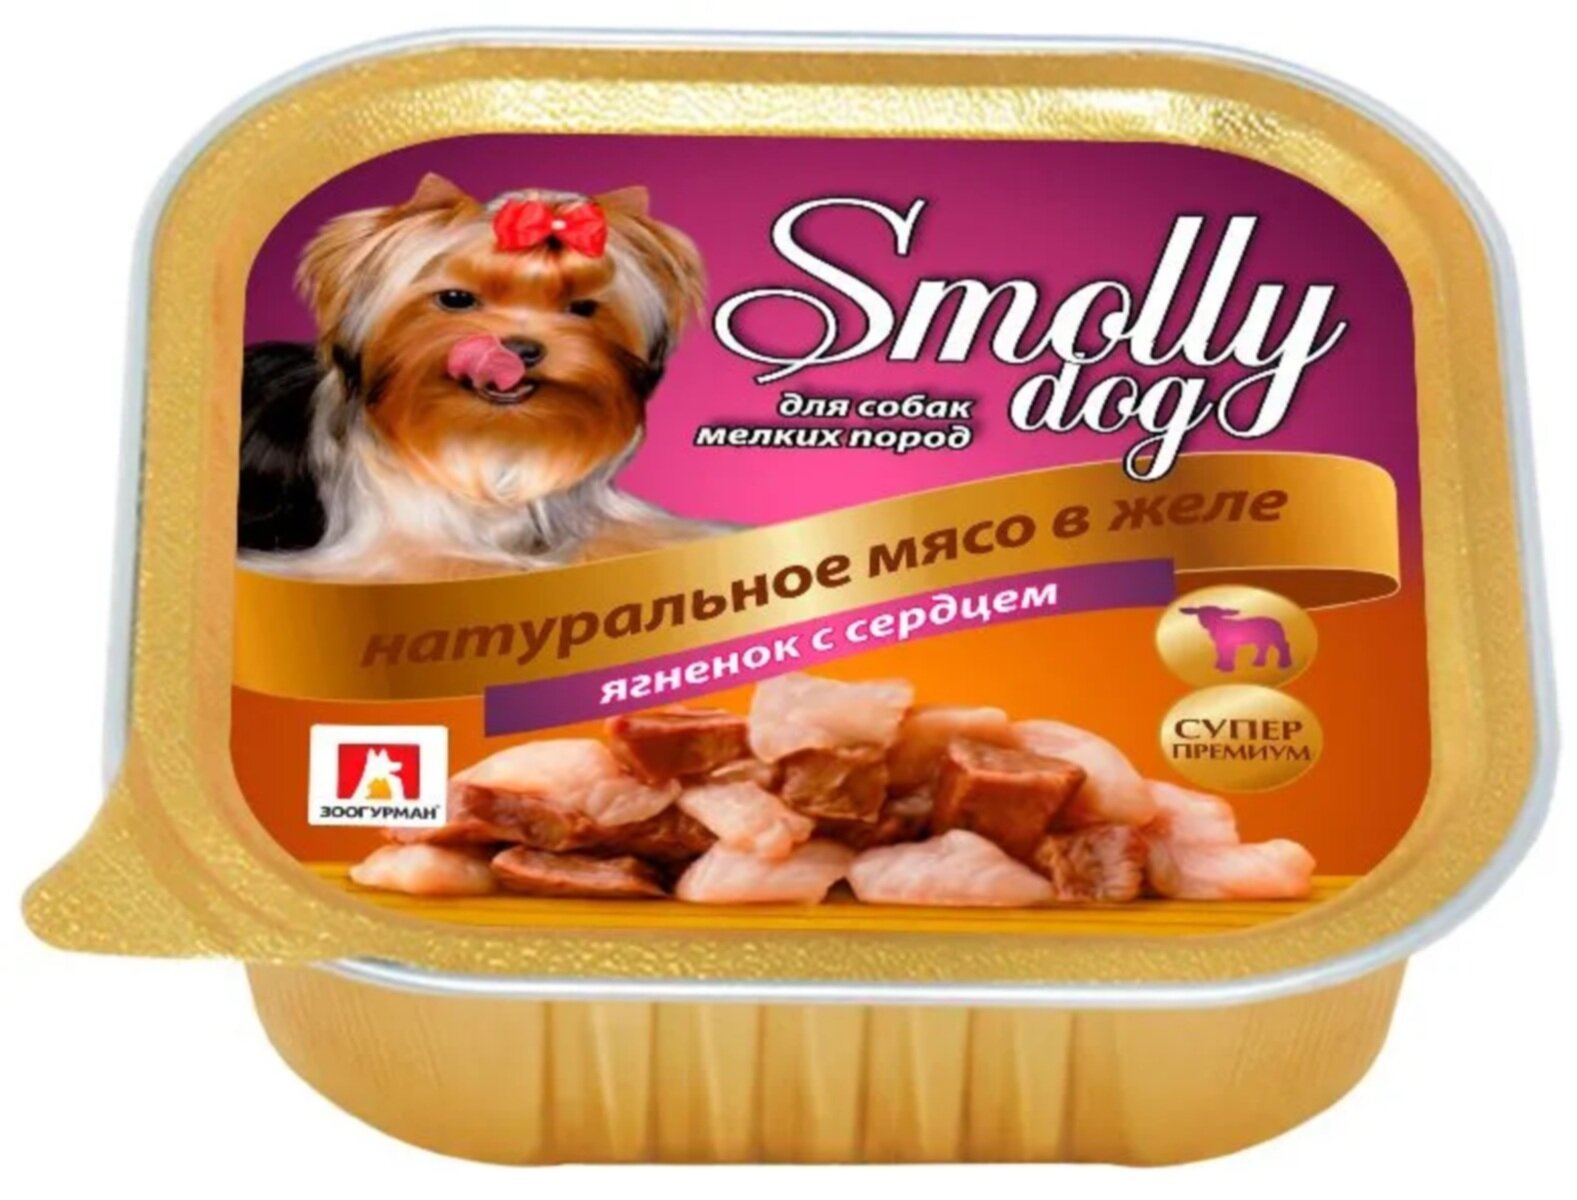 Зоогурман консервы для собак "Смолли Дог" Ягненок с сердцем 100г